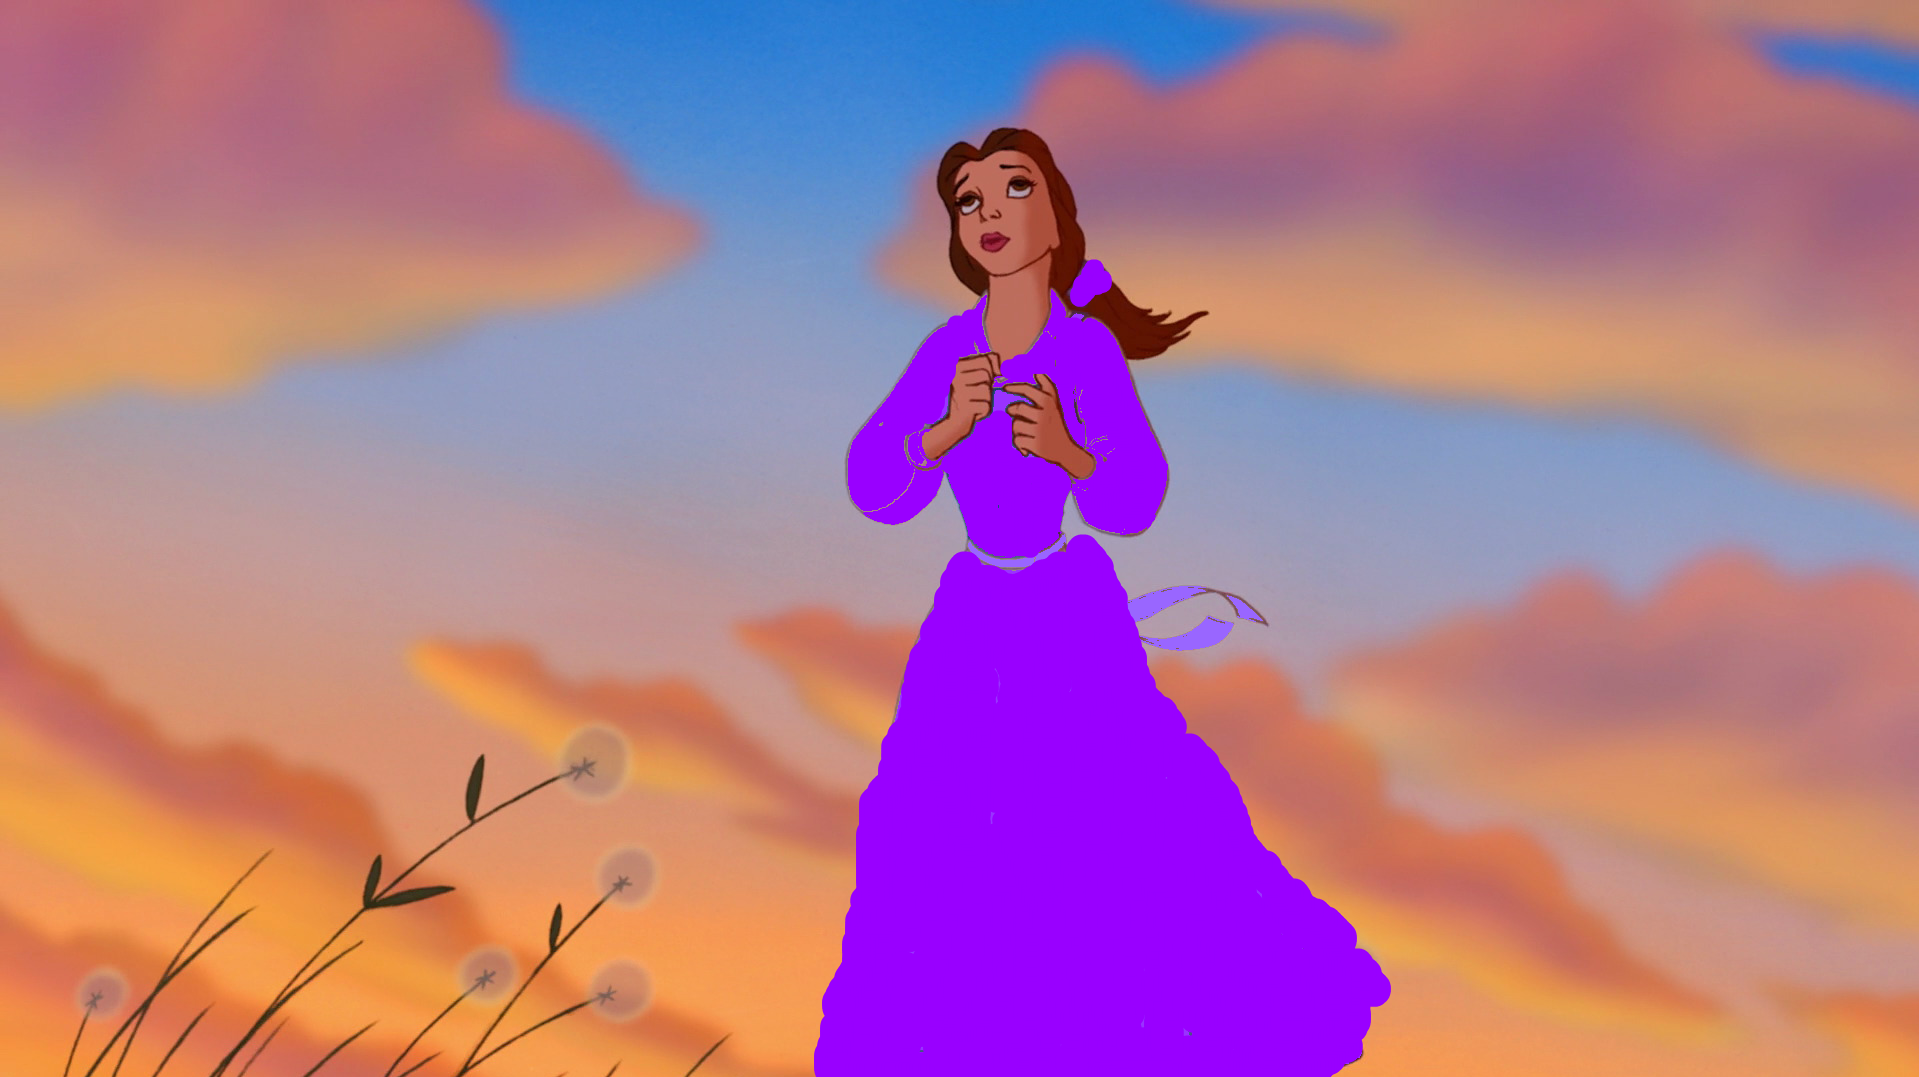 Belle dressed in purple Disney Princess Fan Art